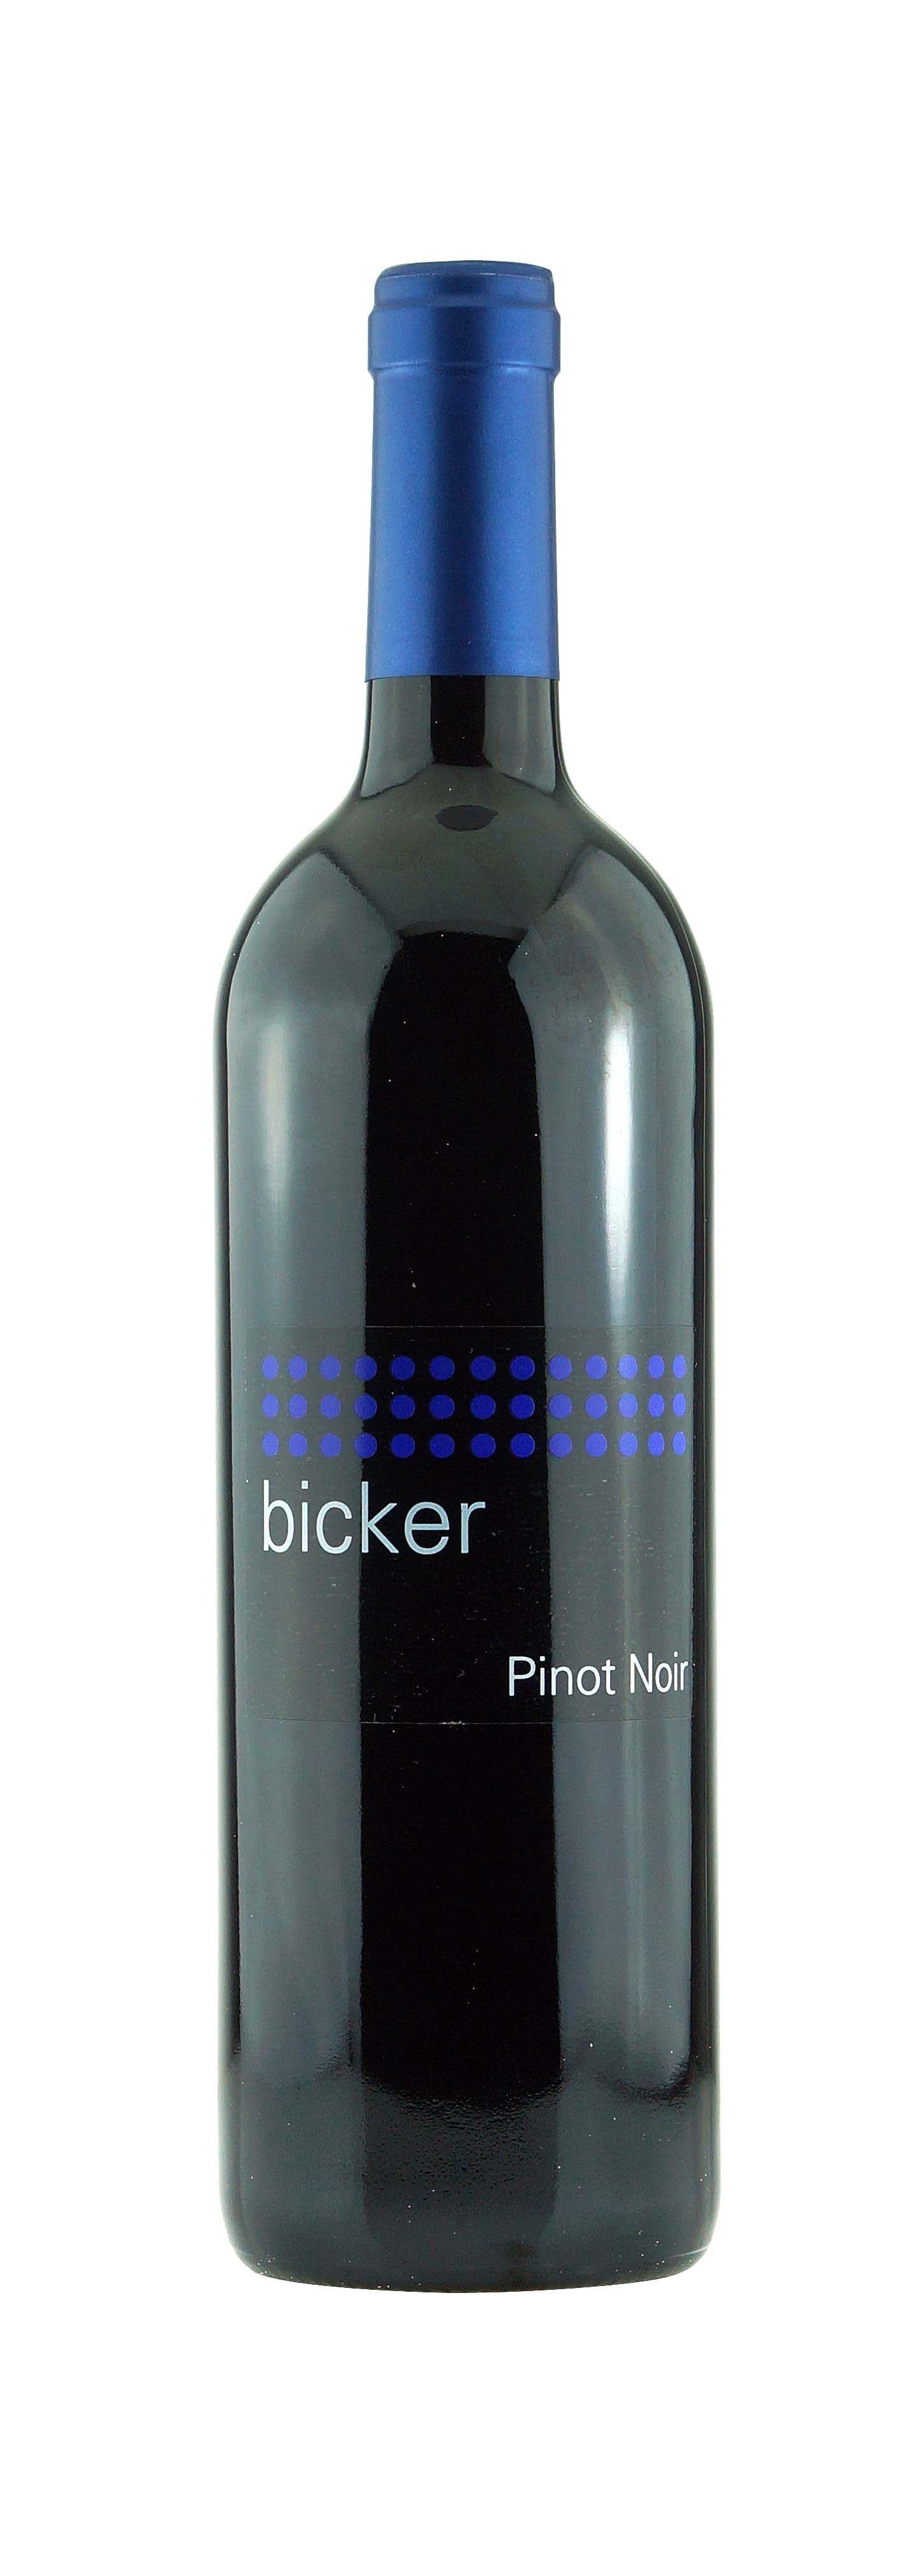 Aargau AOC Bicker Pinot Noir 2013